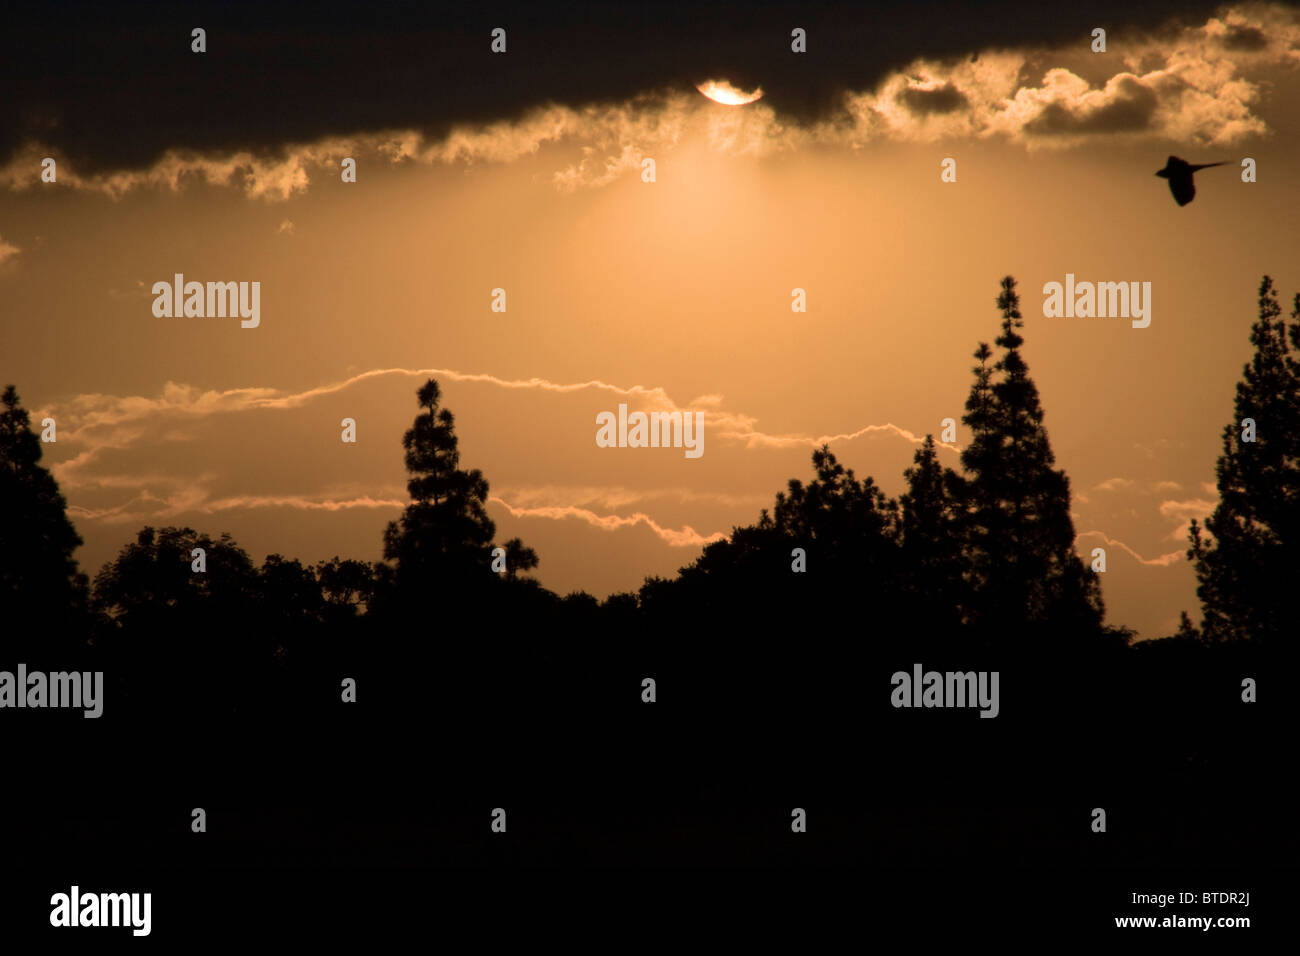 Moody tramonto con alberi in silhouette e un mousebird in volo Foto Stock